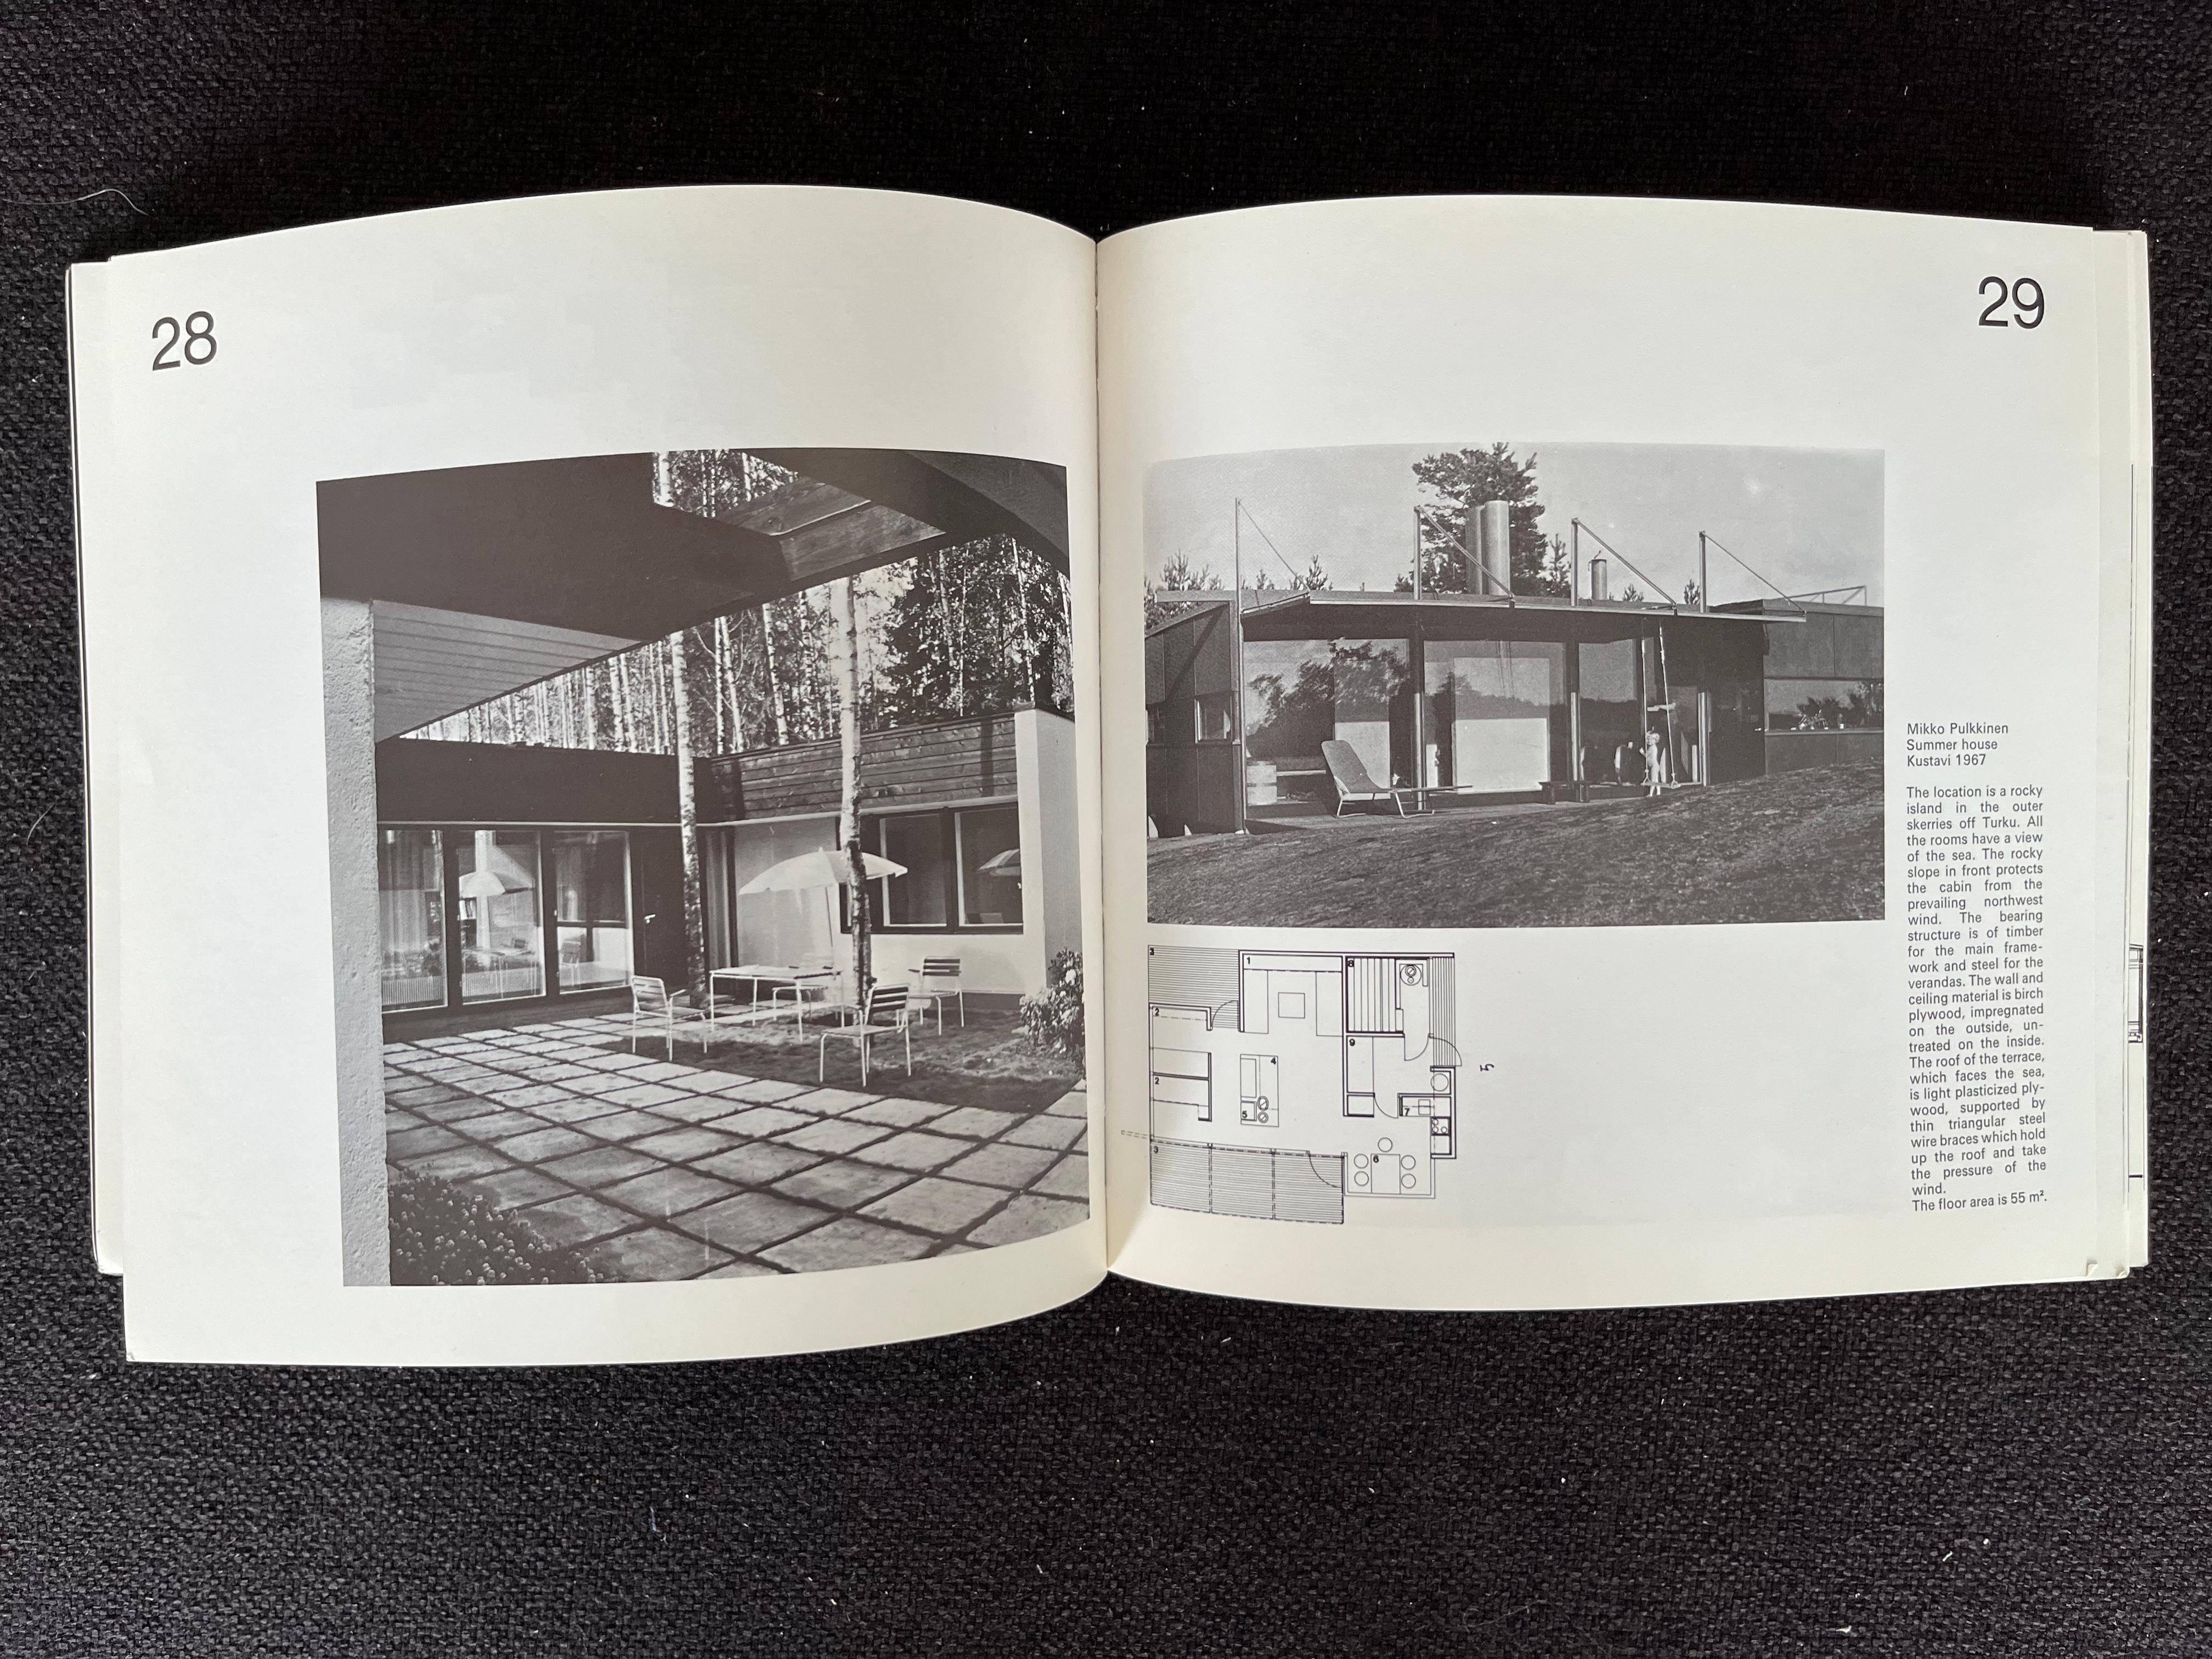 - 1975
- Exposition sur l'architecture finlandaise
- Le musée de l'architecture finlandaise et le centre de congrès des Pays-Bas
- bon état d'origine
- Nombreuses photos dont des meubles d'intérieur d'Alvar Aalto.
- JR.